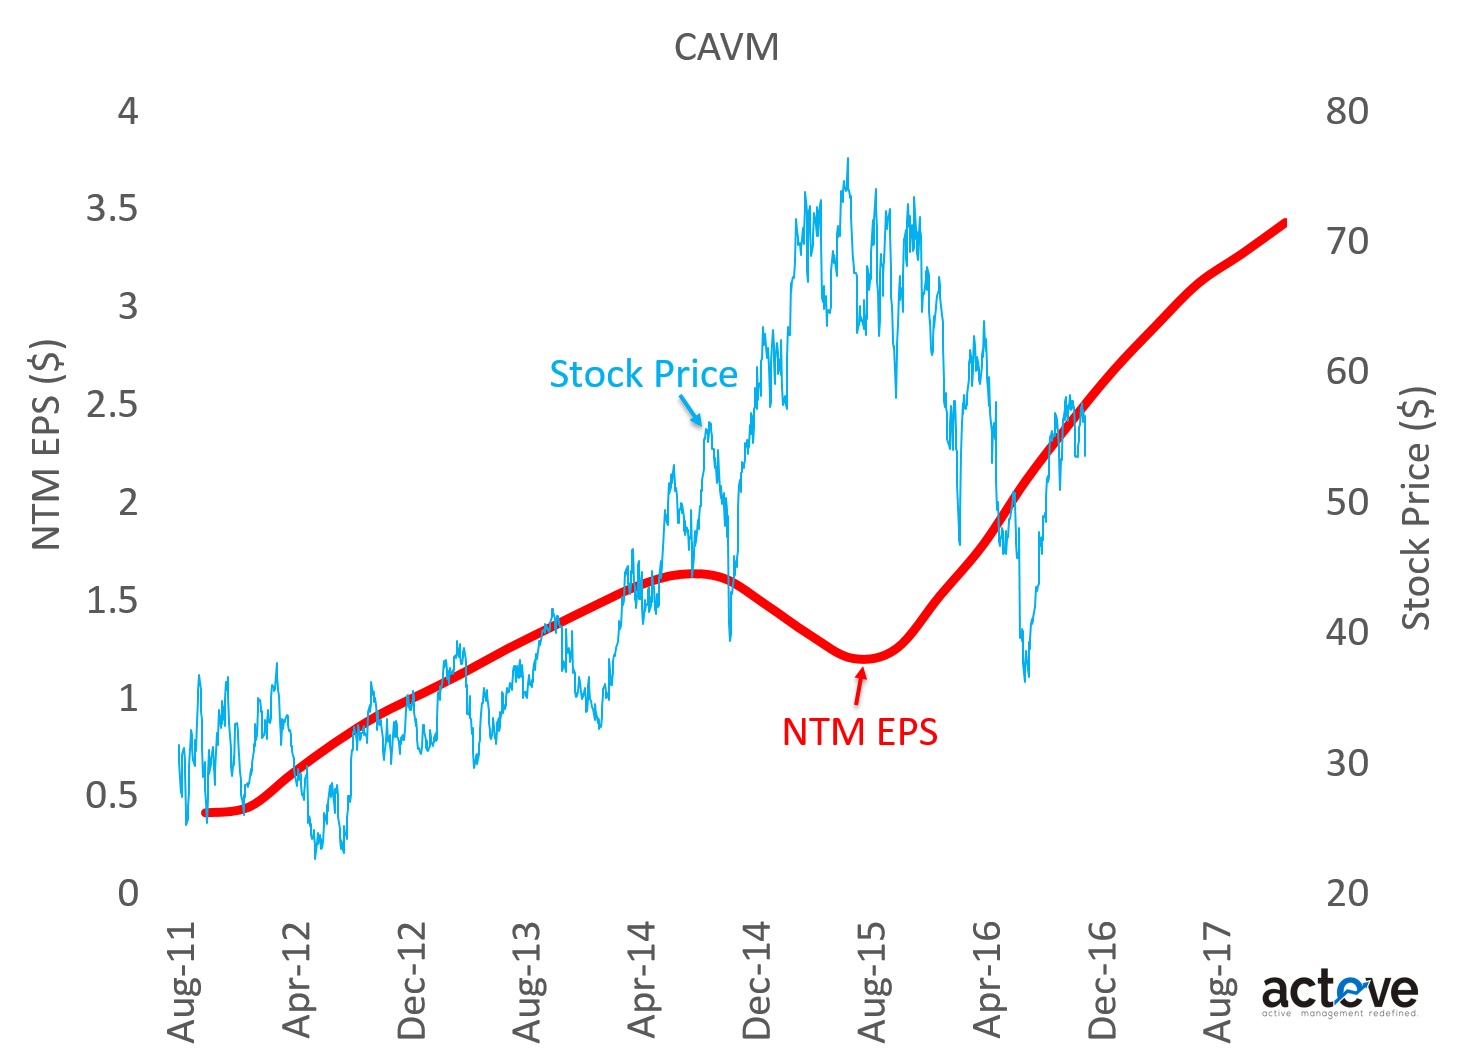 CAVM Stock Price vs. NTM EPS estimates